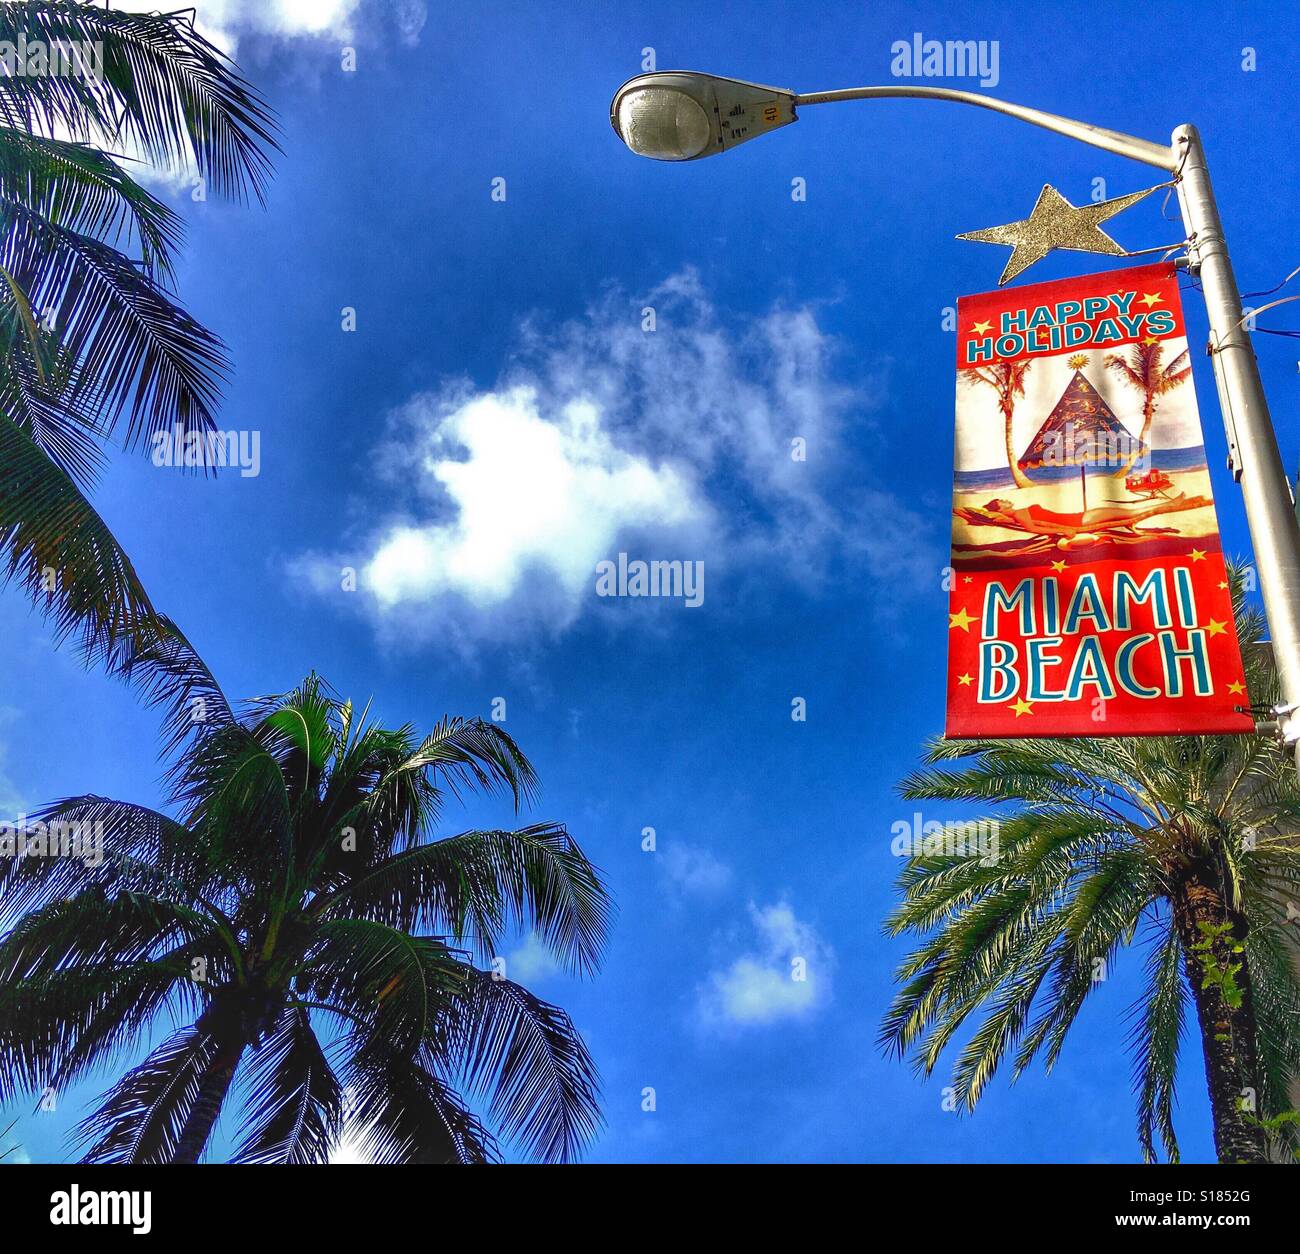 Happy Holidays Miami Beach Stock Photo